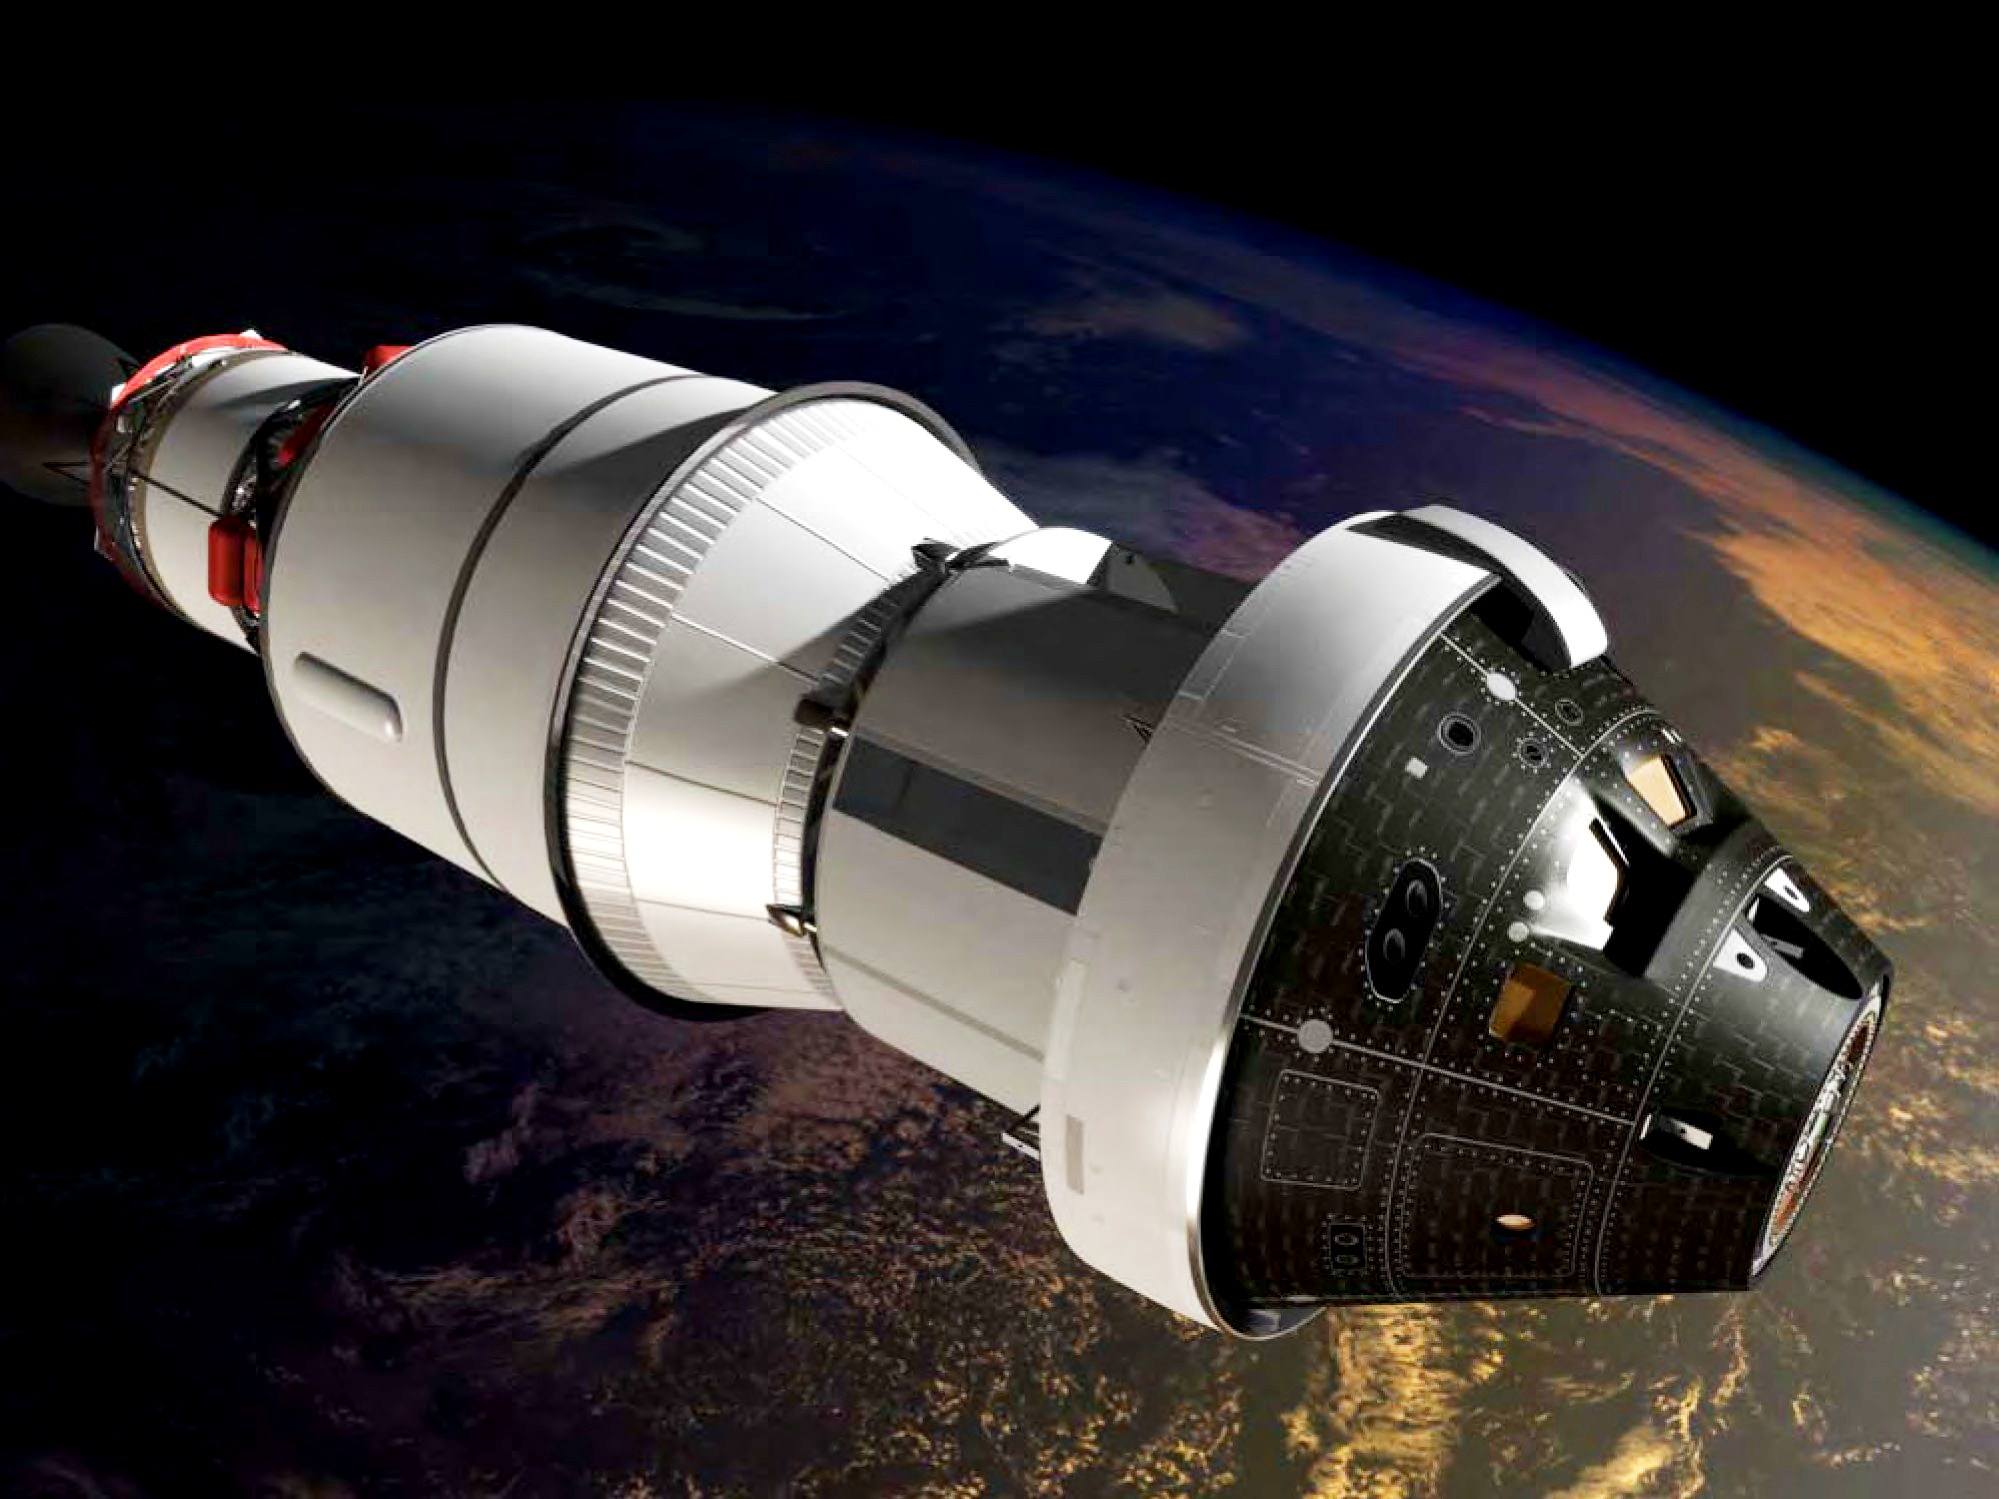 Название пилотируемого космического корабля. Космический корабль Ореон. Космический корабль Орион НАСА. Пилотируемый корабль Орион. Корабль Orion НАСА.